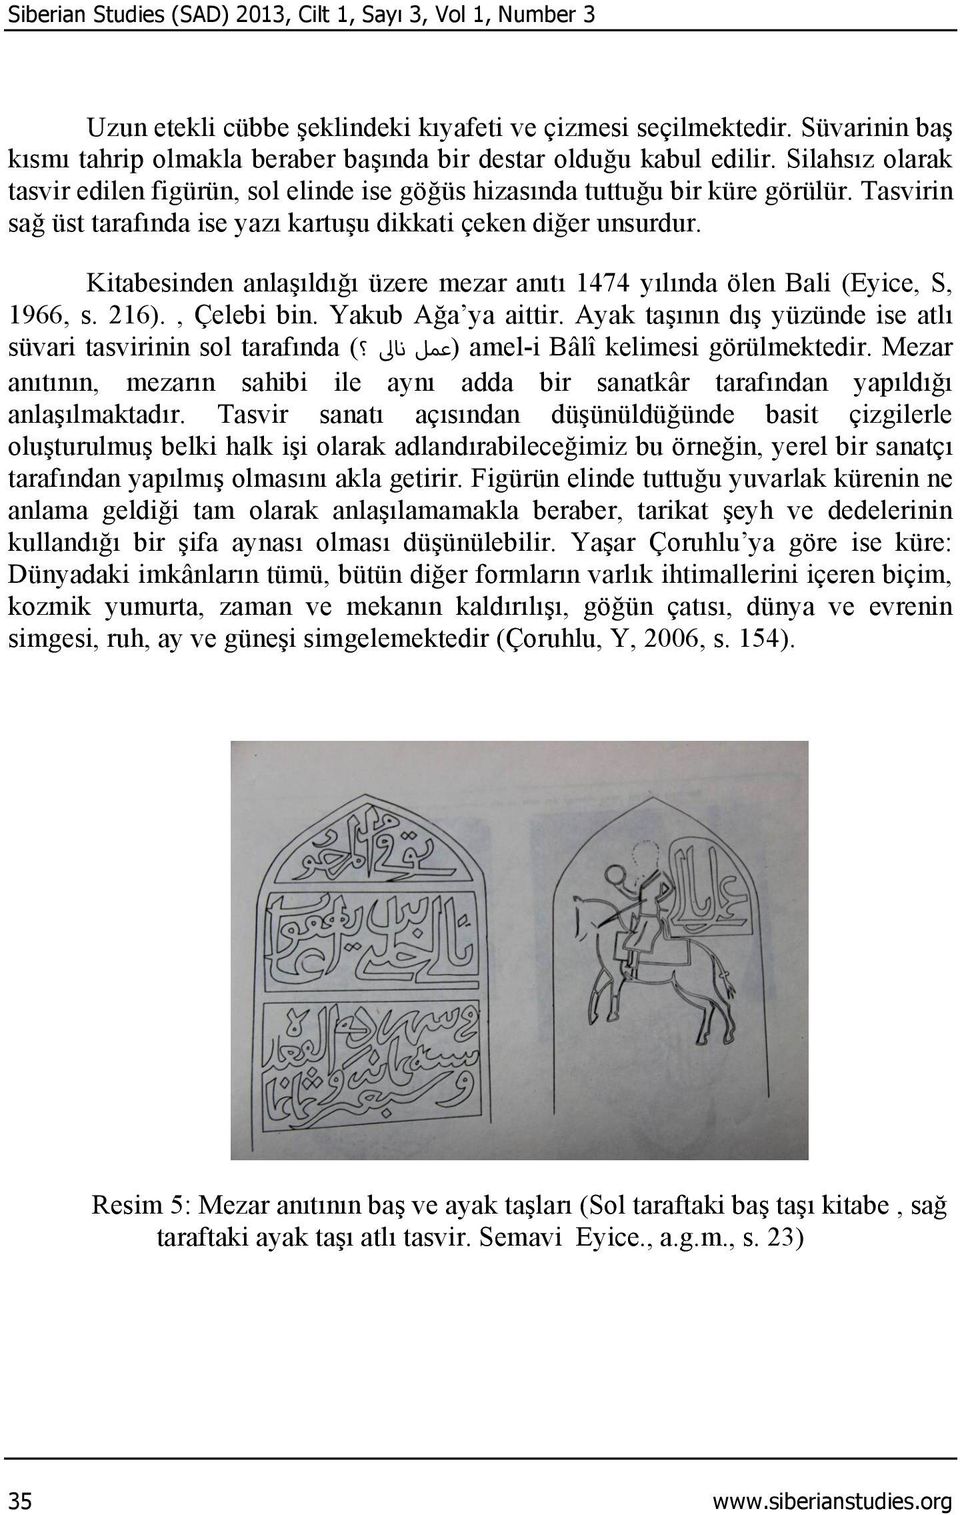 Tasvirin sağ üst tarafında ise yazı kartuşu dikkati çeken diğer unsurdur. Kitabesinden anlaşıldığı üzere mezar anıtı 1474 yılında ölen Bali (Eyice, S, 1966, s. 216)., Çelebi bin. Yakub Ağa ya aittir.